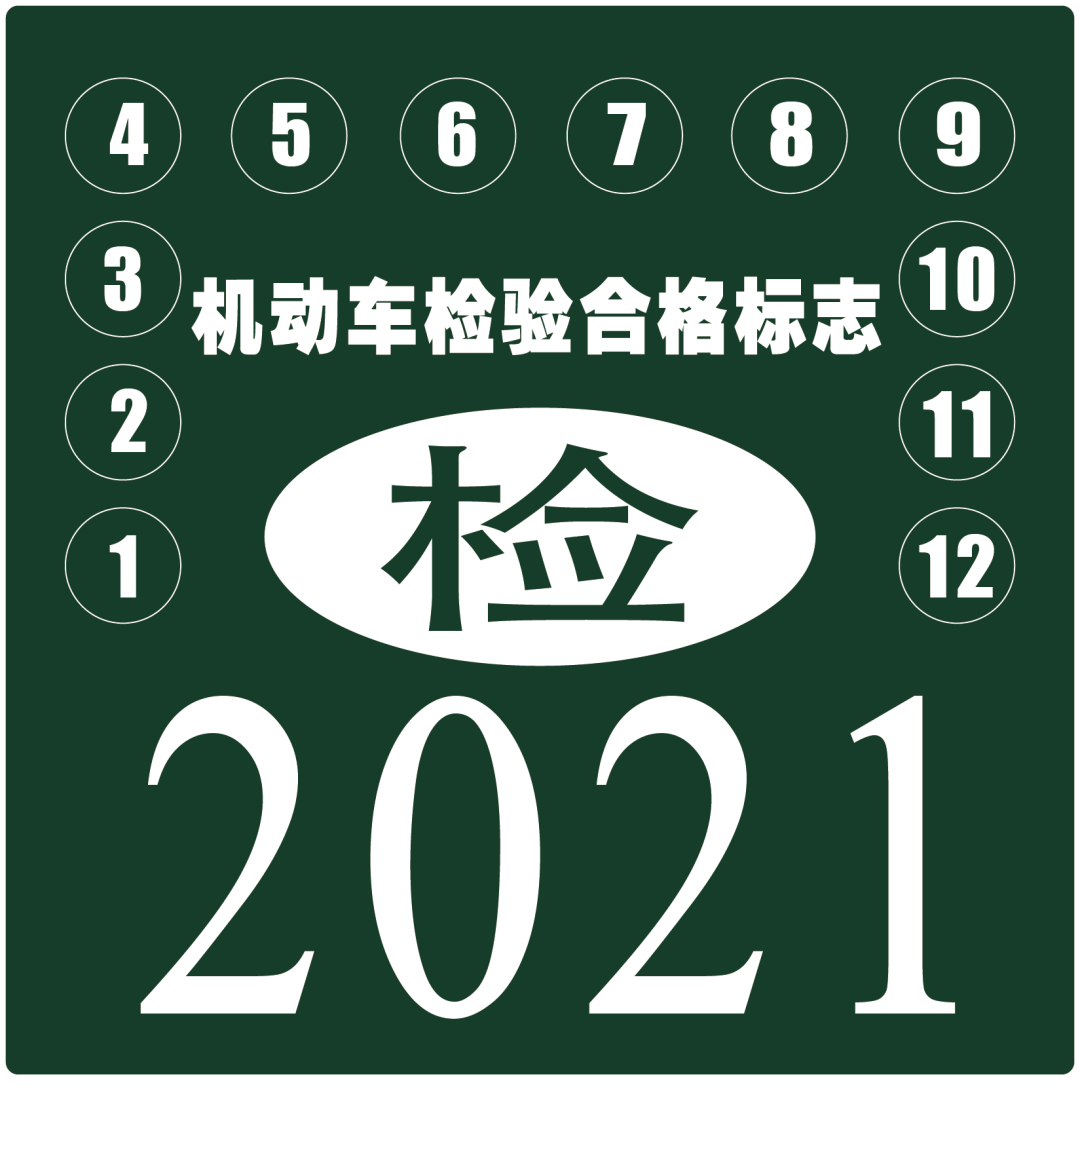 深圳交警提醒：已领取检验标志电子凭证的车辆无须再粘贴纸质标志